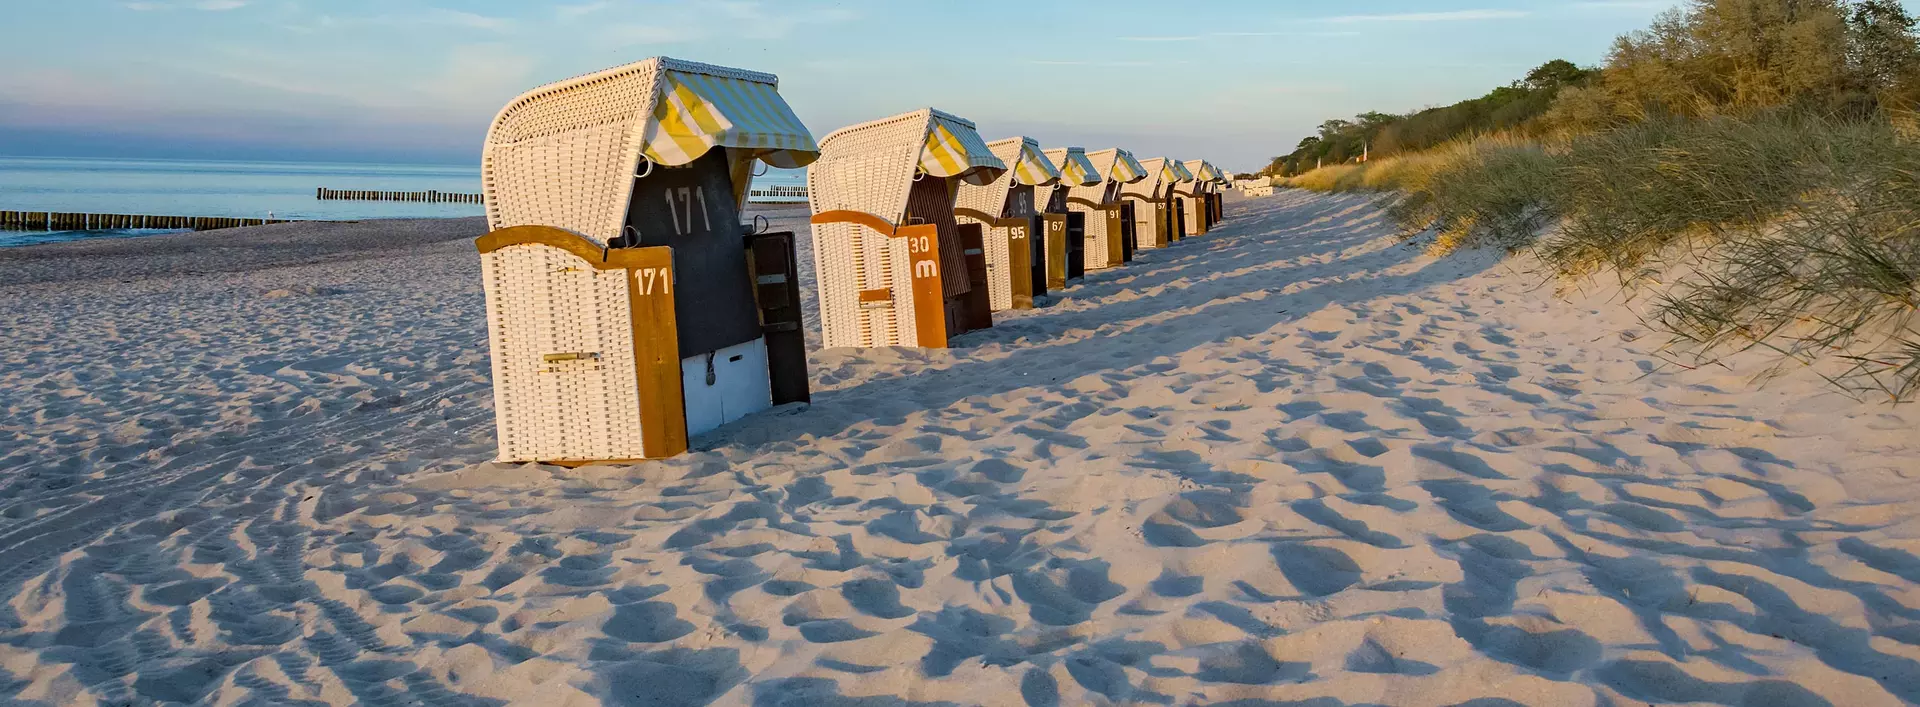 Urlaub an der Ostsee - Badeurlaub am Sandstrand an der Ostsee